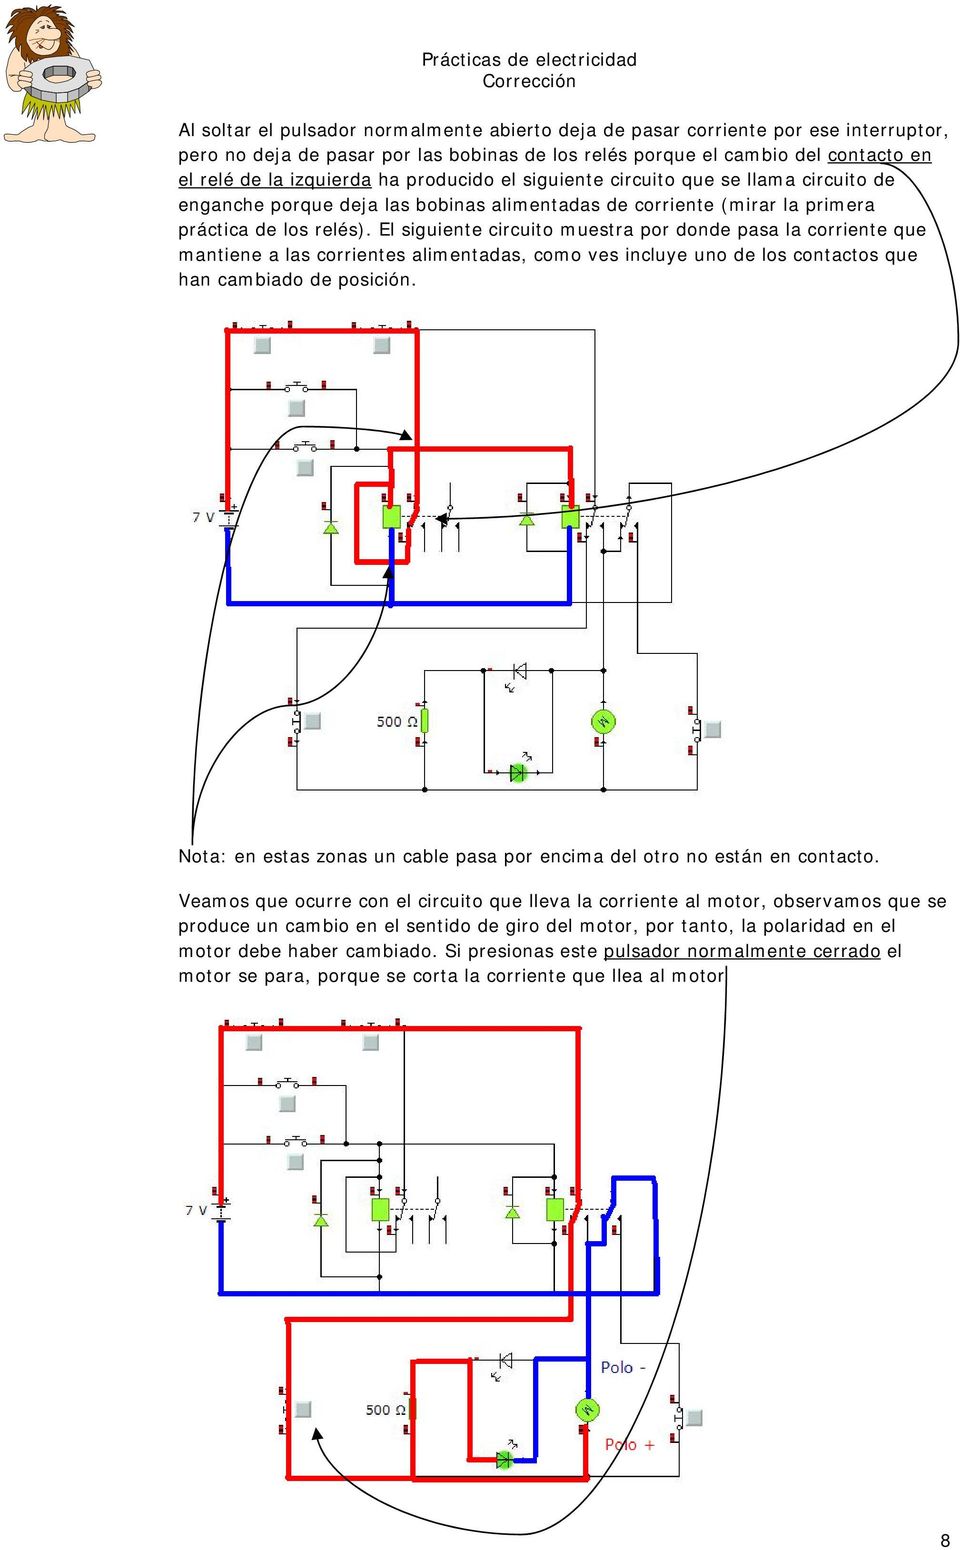 El siguiente circuito muestra por donde pasa la corriente que mantiene a las corrientes alimentadas, como ves incluye uno de los contactos que han cambiado de posición.